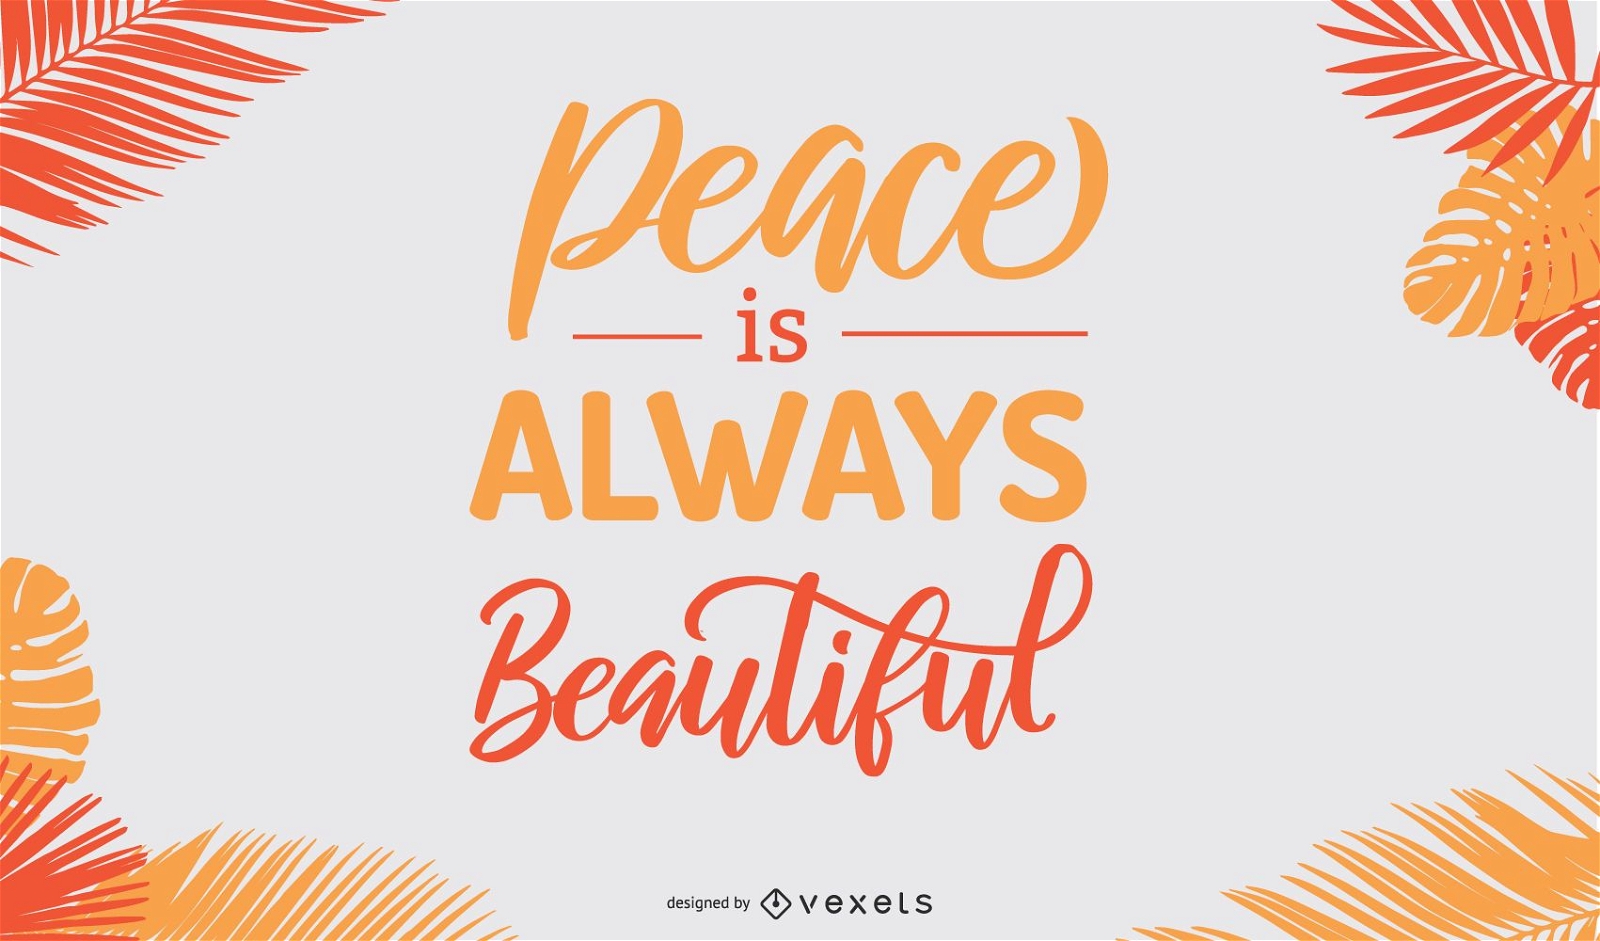 La paz es un hermoso dise?o de cartel.